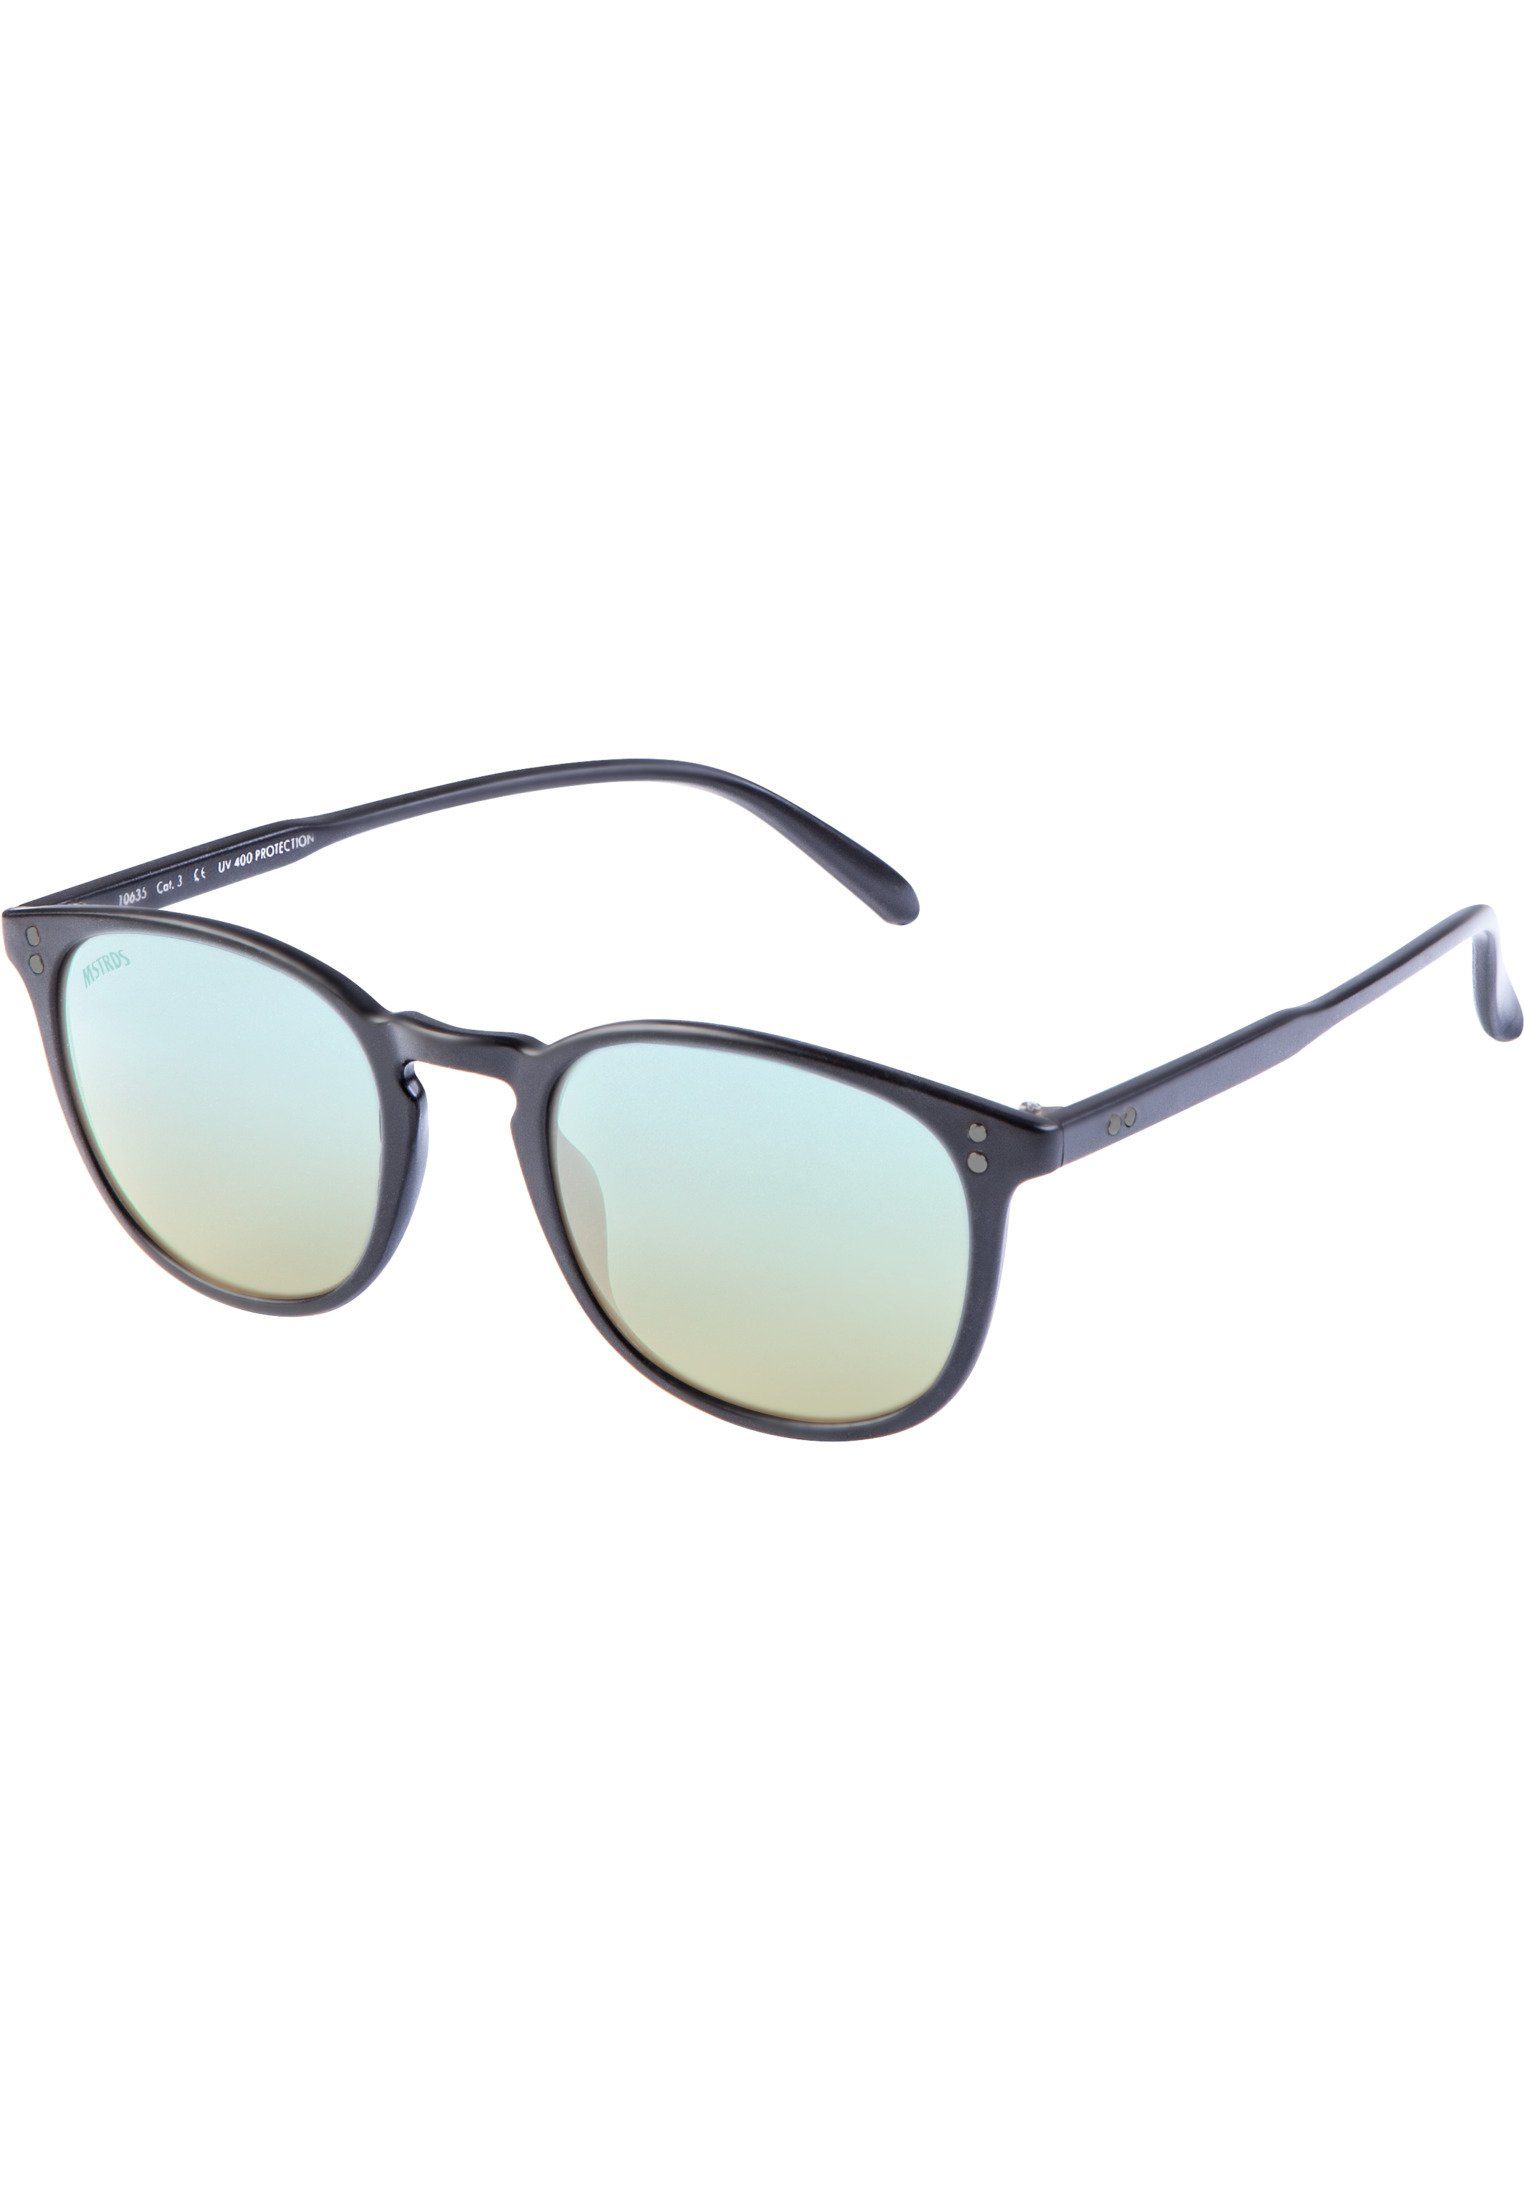 MSTRDS Sonnenbrille Accessoires Sunglasses Arthur blk/blue